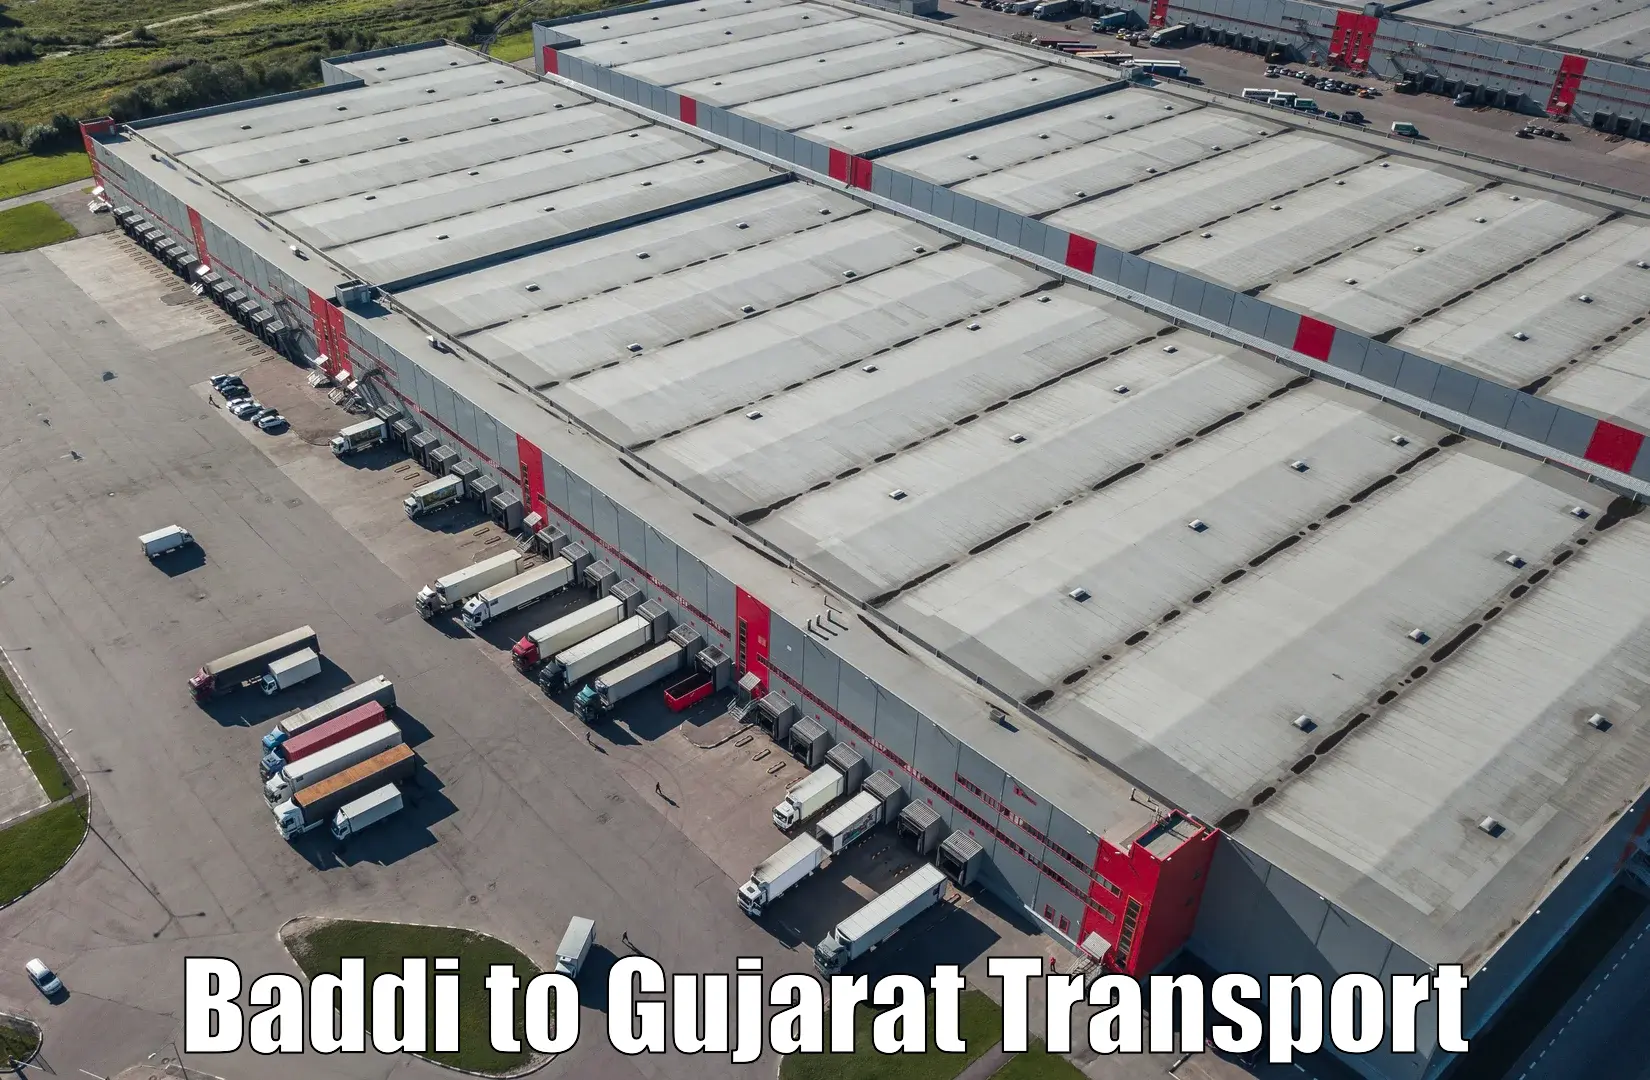 Bike shipping service Baddi to Gujarat